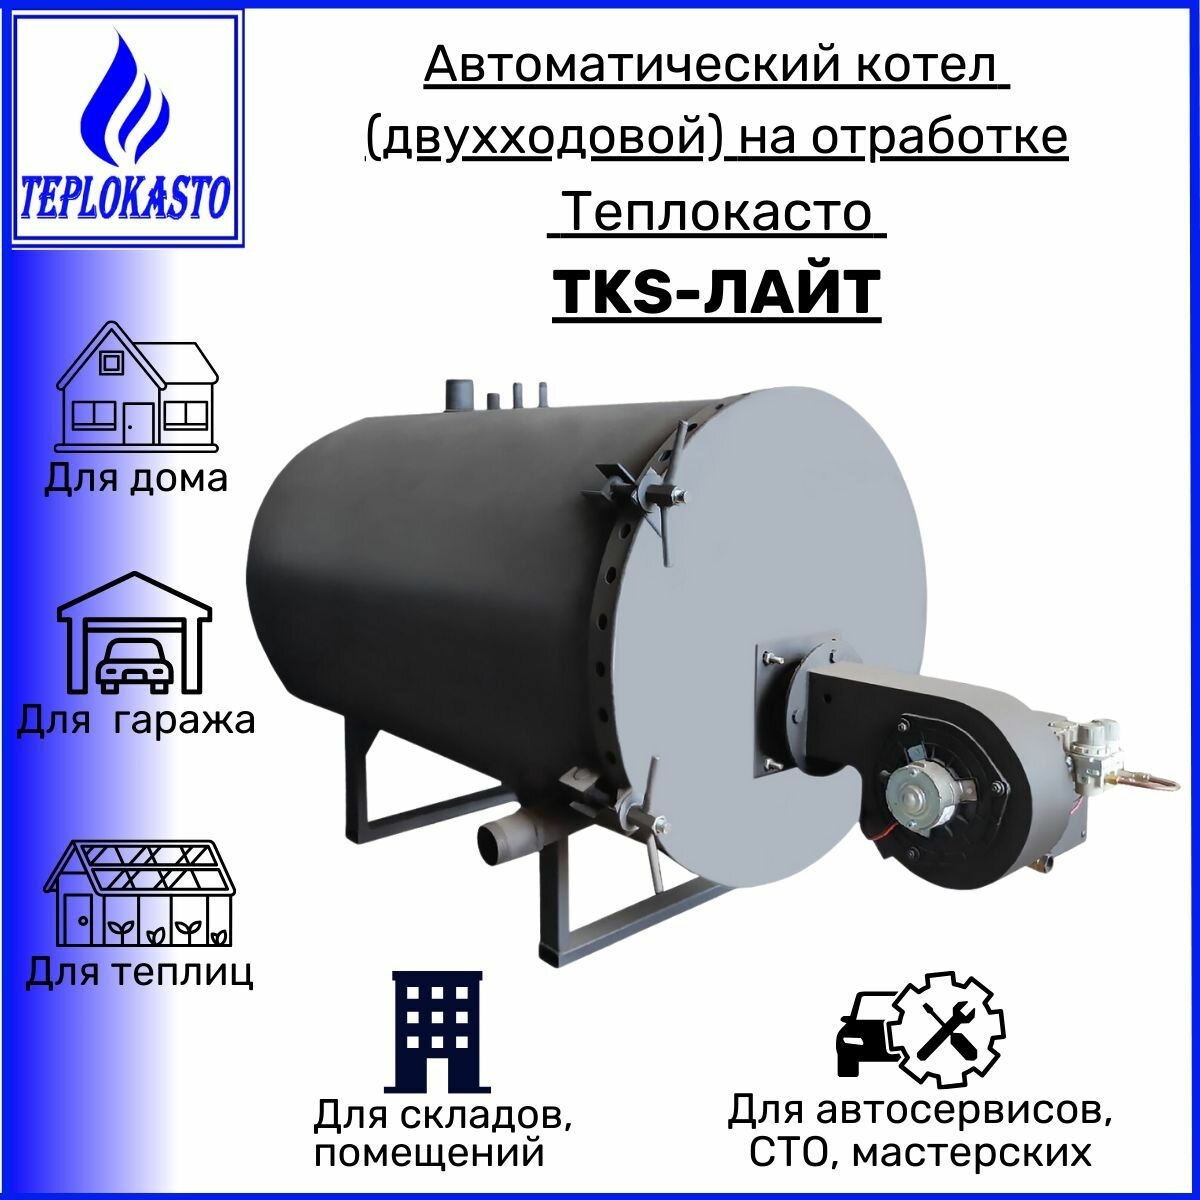 Автоматический дизельный котел на отработанном масле, жидком топливе теплокасто tks-лайт 150 кВт (двухходовой) на 1500 кв. м